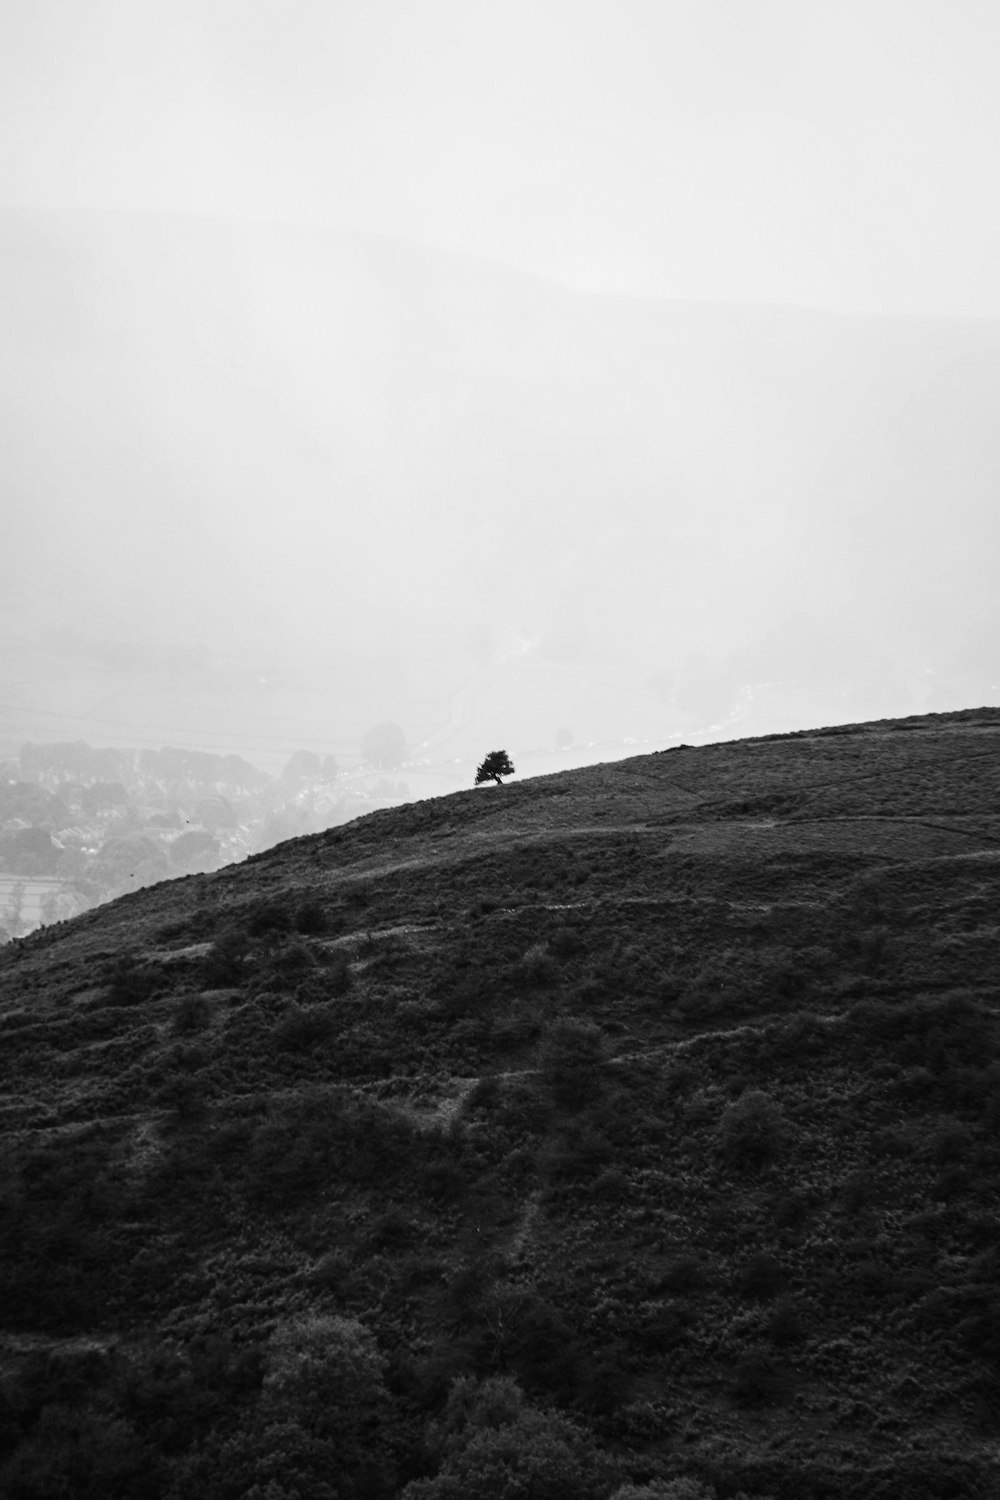 Une photo en noir et blanc d’un arbre solitaire sur une colline